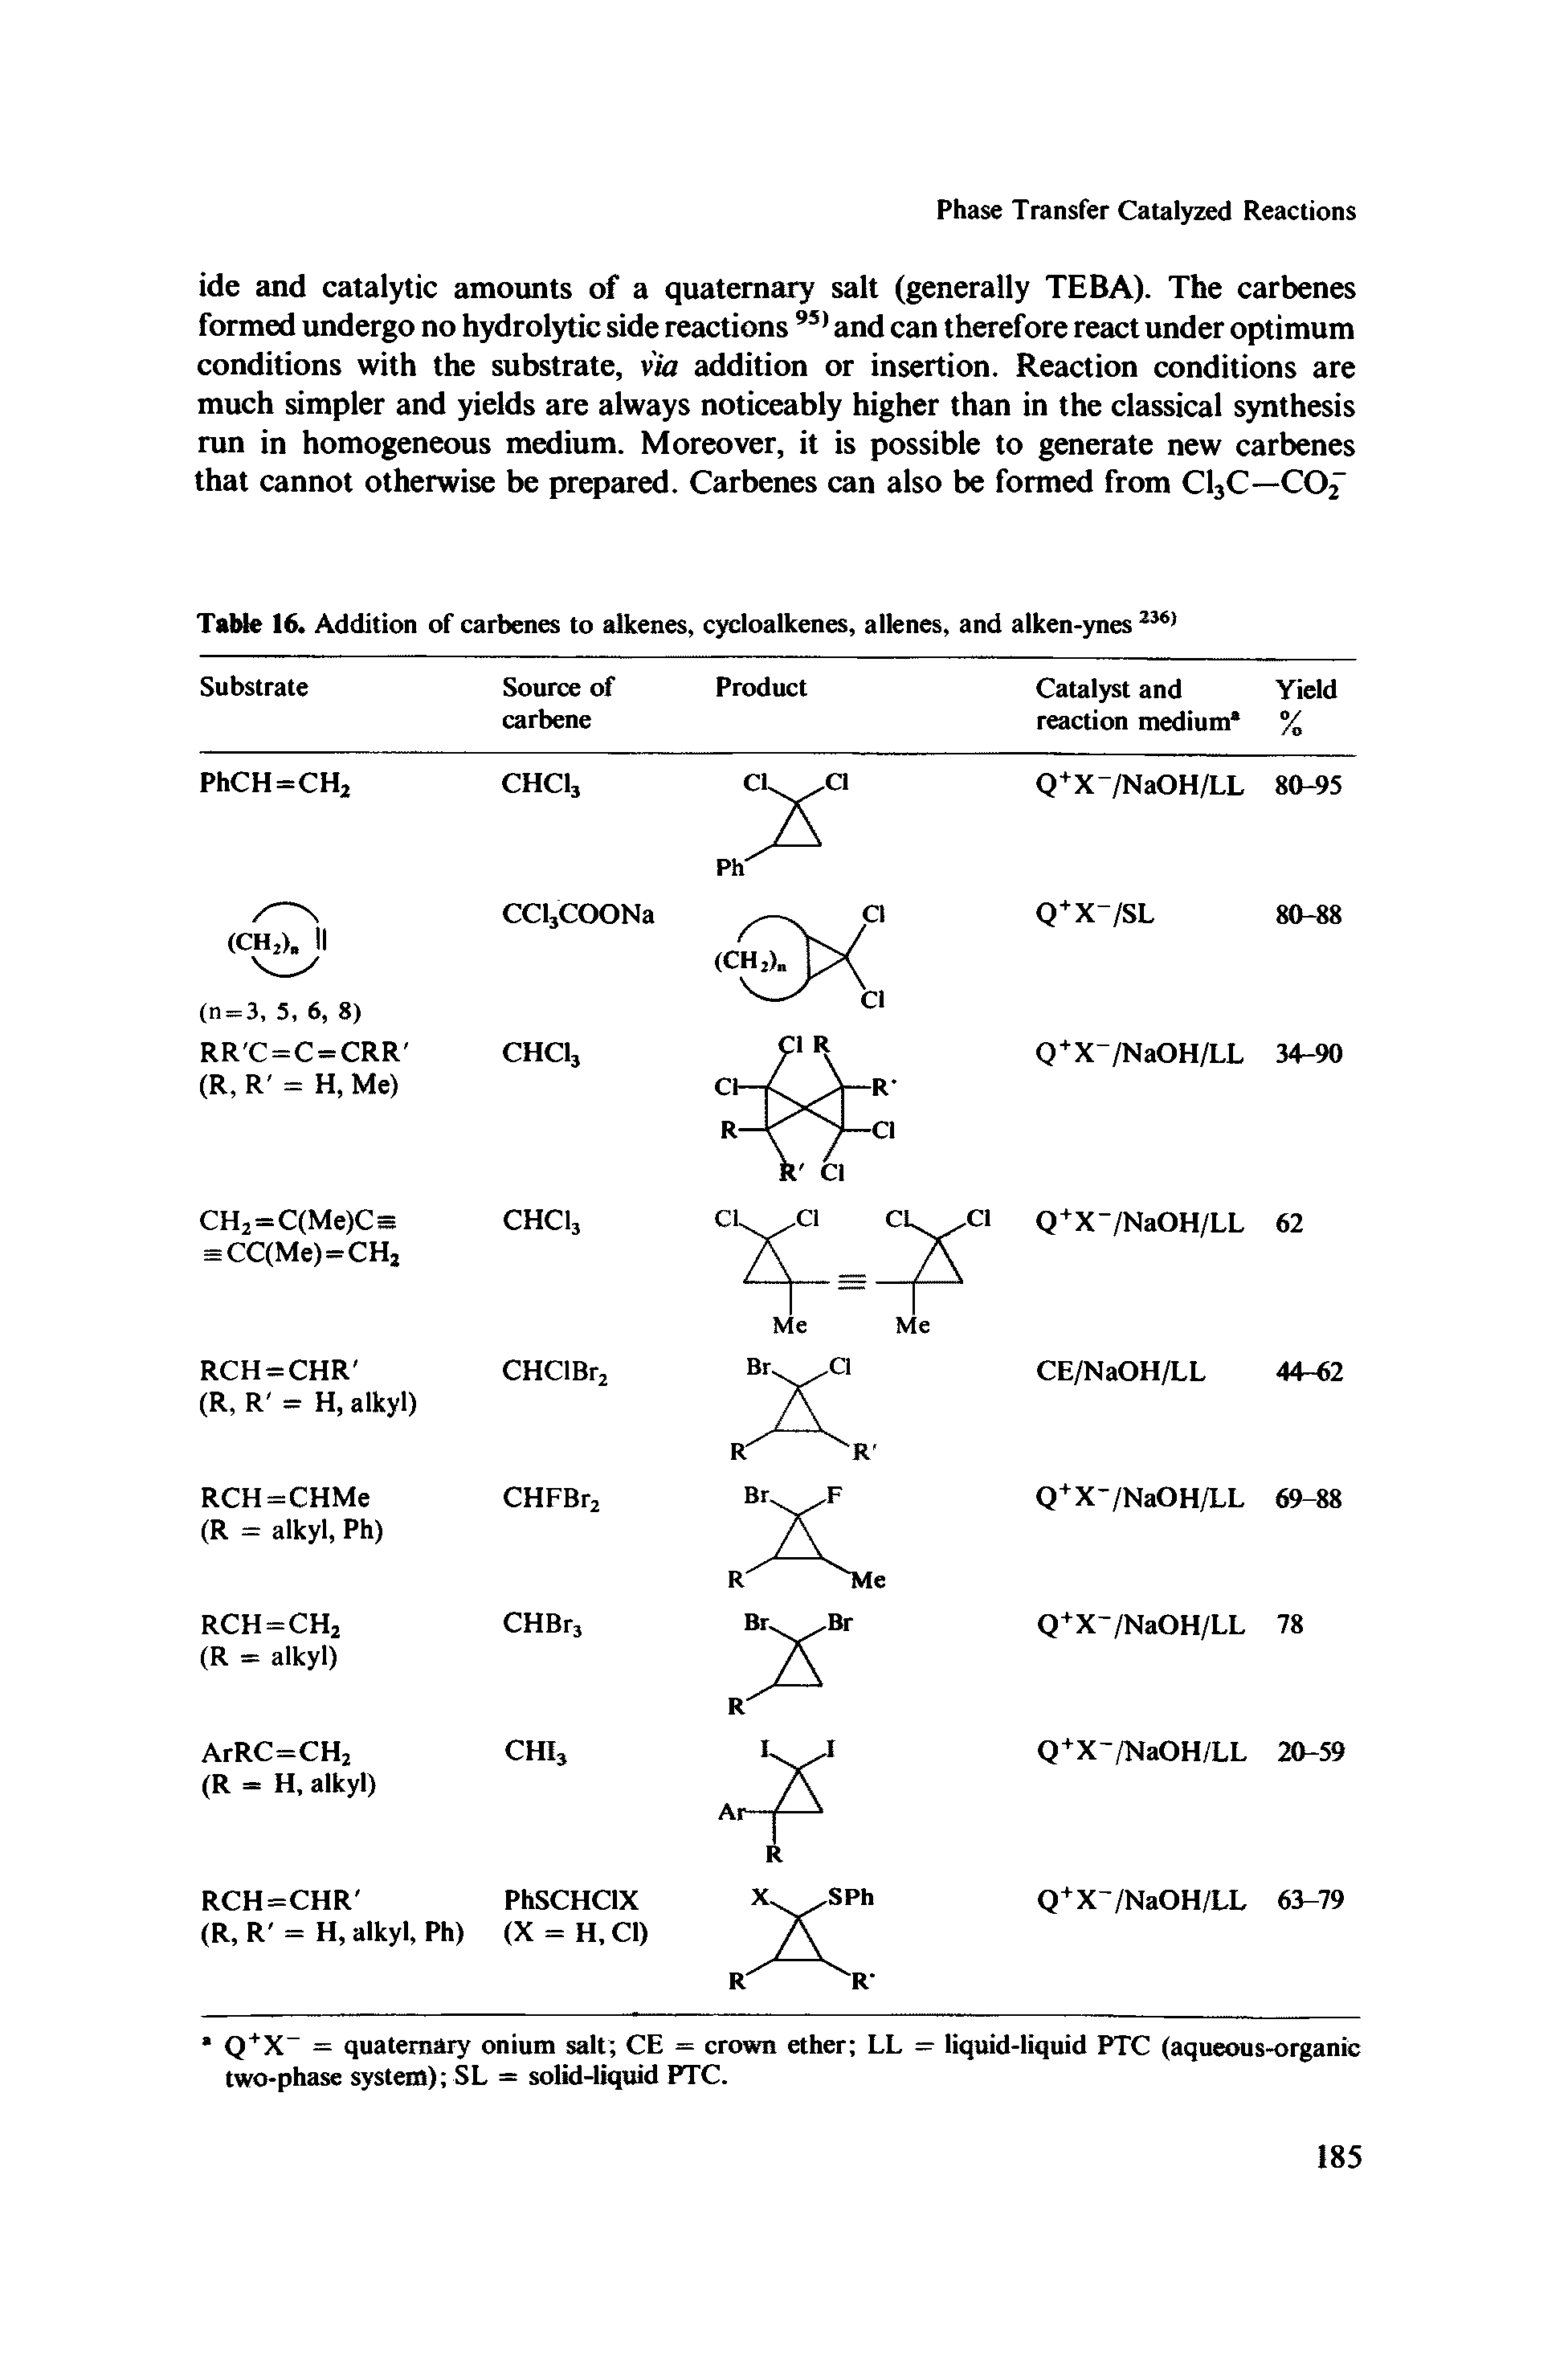 Table 16. Addition of carbenes to alkenes, cycloalkenes, allenes, and alken-ynes...